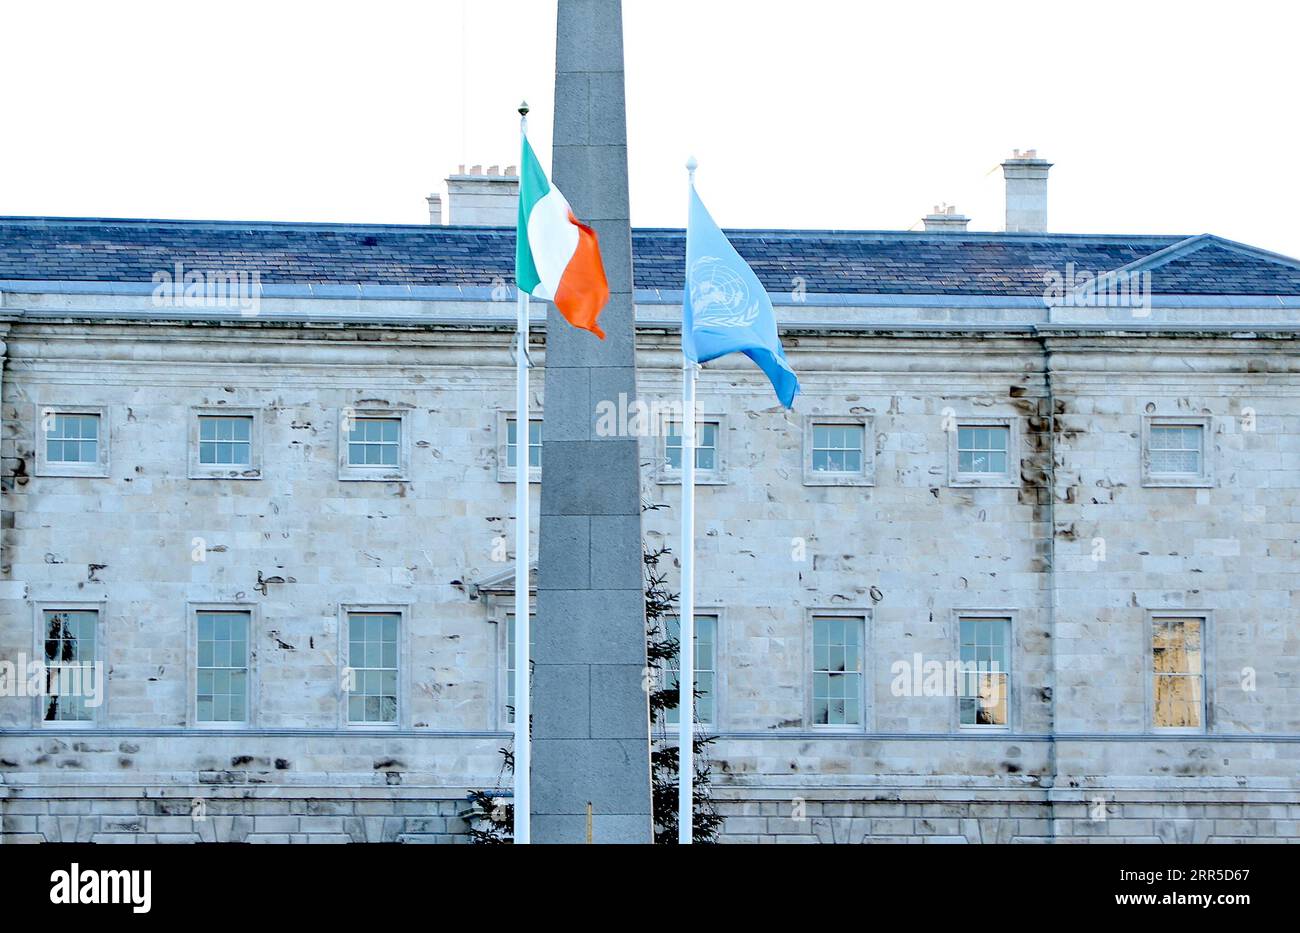 210102 -- PECHINO, 2 gennaio 2021 -- la bandiera R delle Nazioni Unite è vista sventolare accanto alla bandiera nazionale irlandese a Leinster House a Dublino, Irlanda, 1 gennaio 2021. L'Irlanda ha preso il suo seggio come membro eletto del Consiglio di sicurezza delle Nazioni Unite per un mandato di due anni a partire dal 1° gennaio 2021, ha detto il Dipartimento degli affari Esteri del paese venerdì. FOTO DEL GIORNO Xinhua PUBLICATIONxNOTxINxCHN Foto Stock